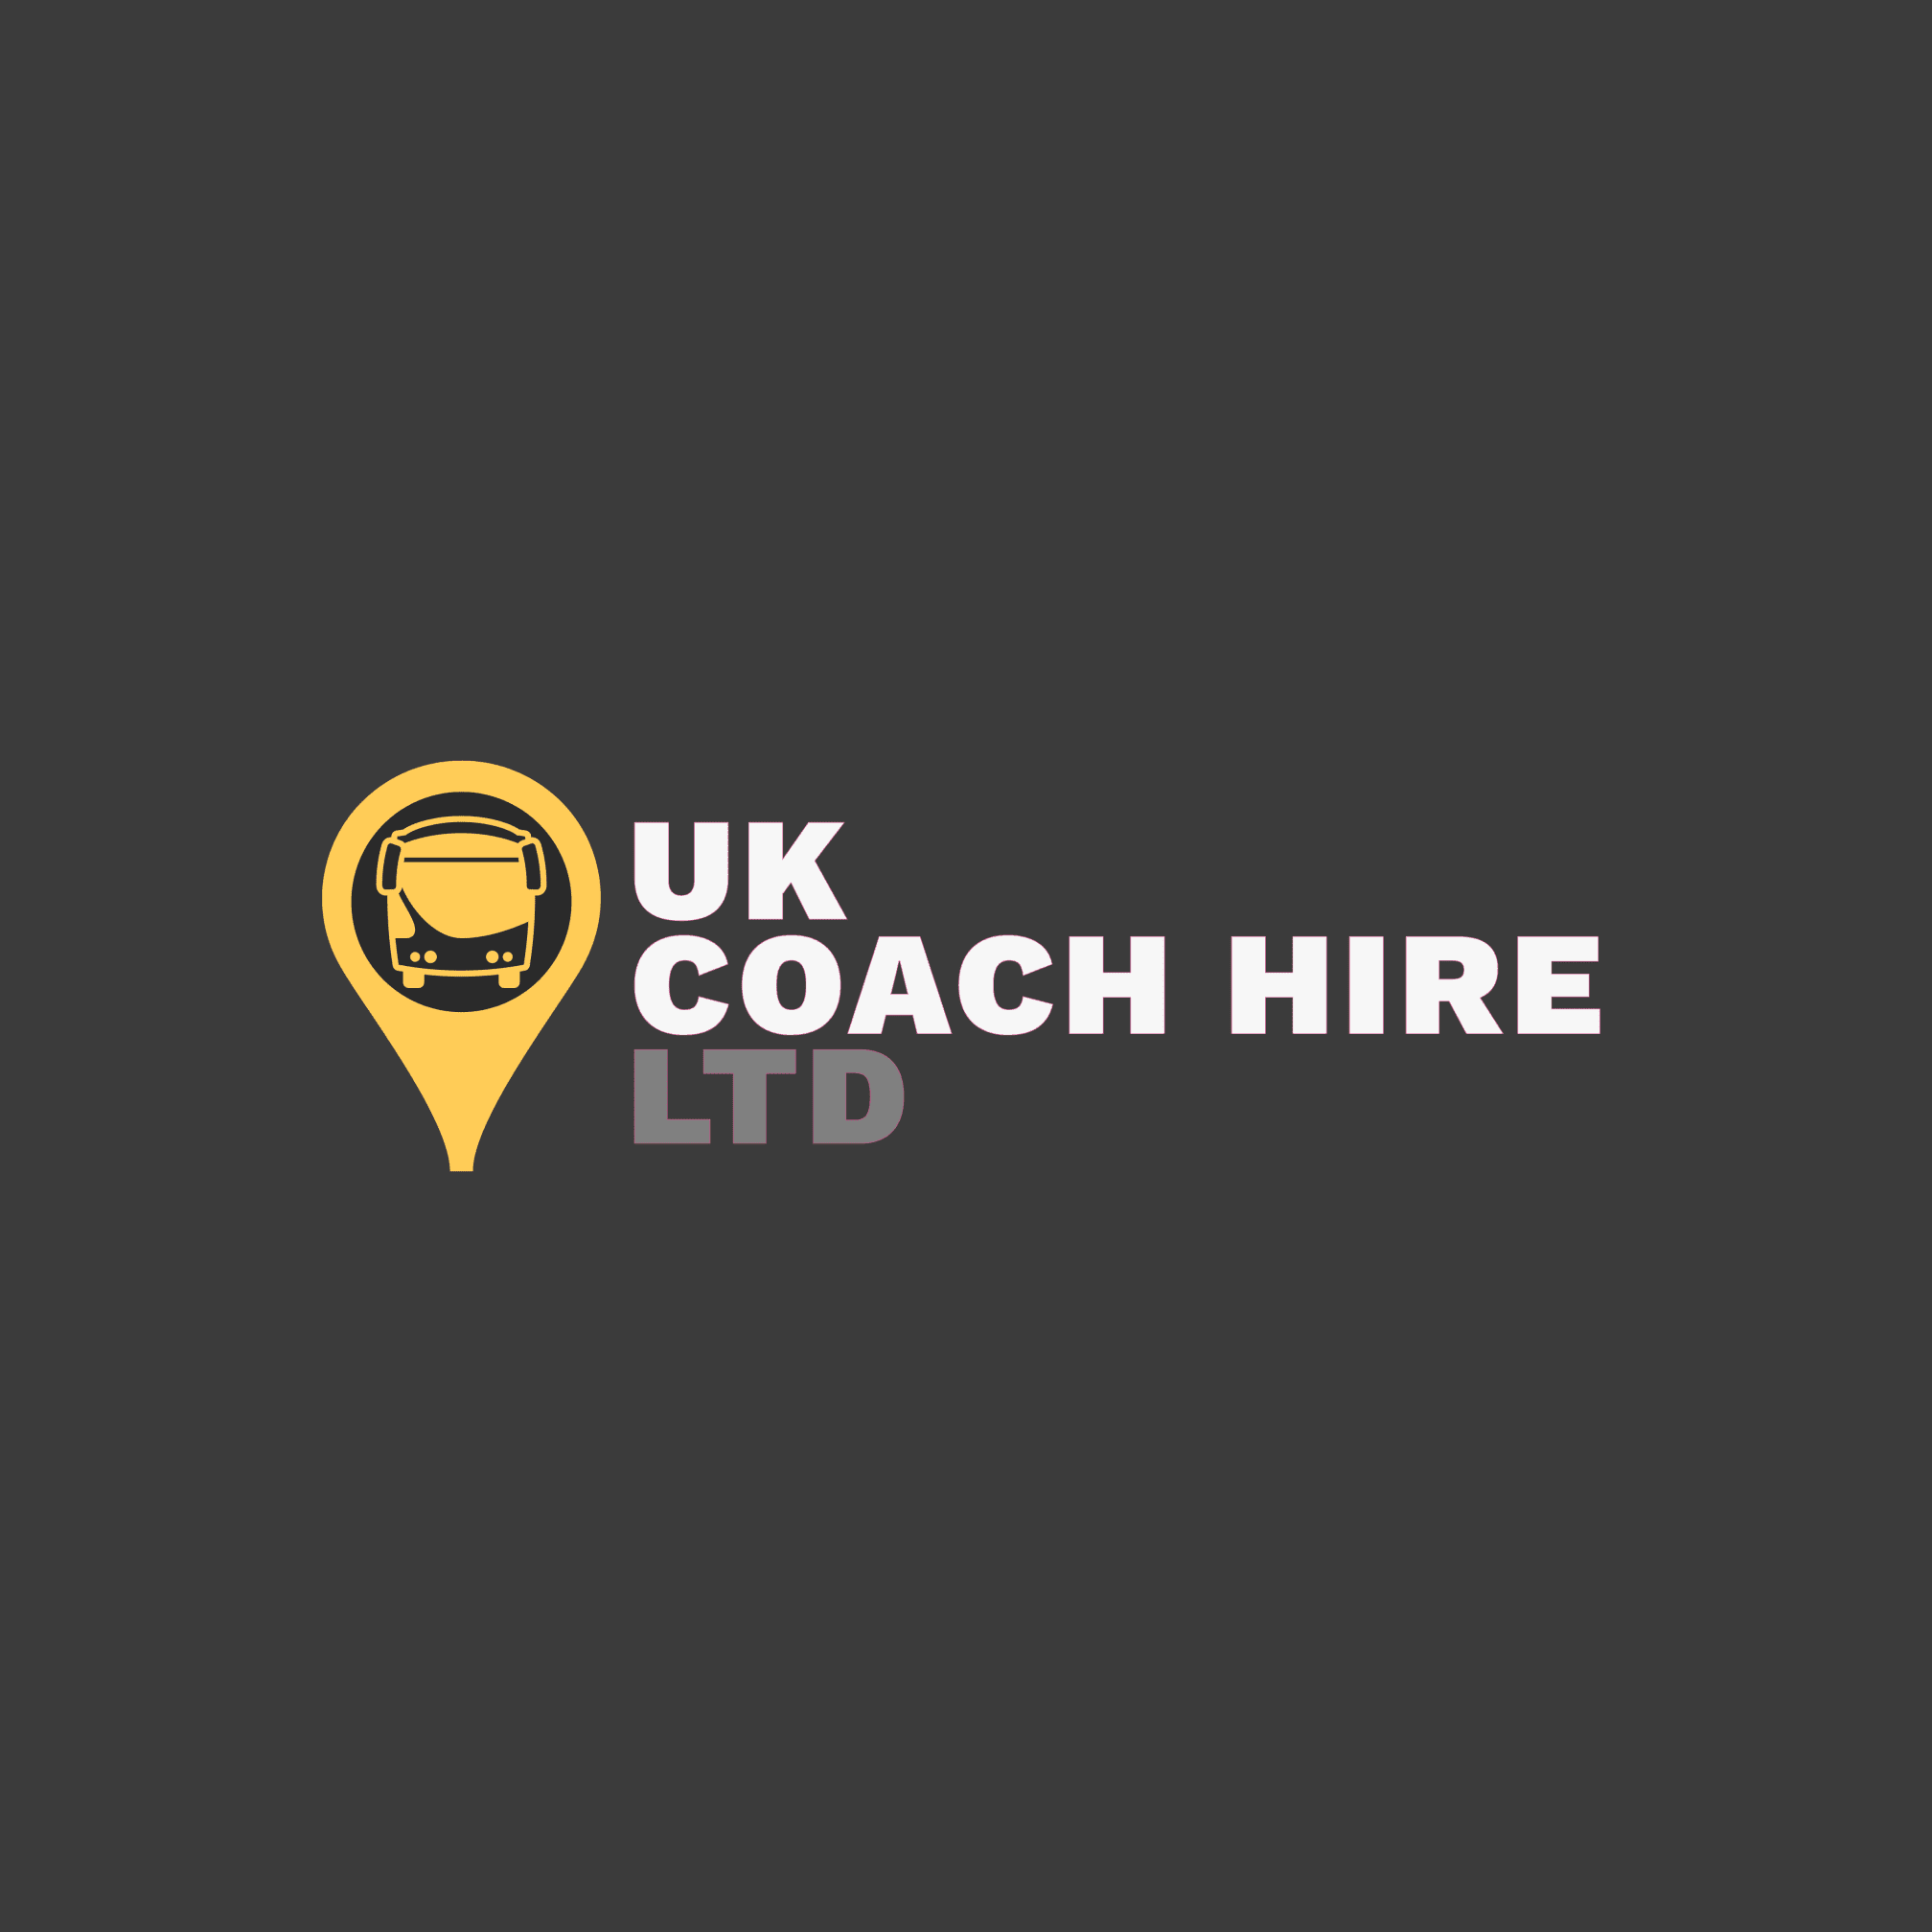 UK Coach Hire Ltd - Manchester, Lancashire M2 3HZ - 03301 335633 | ShowMeLocal.com